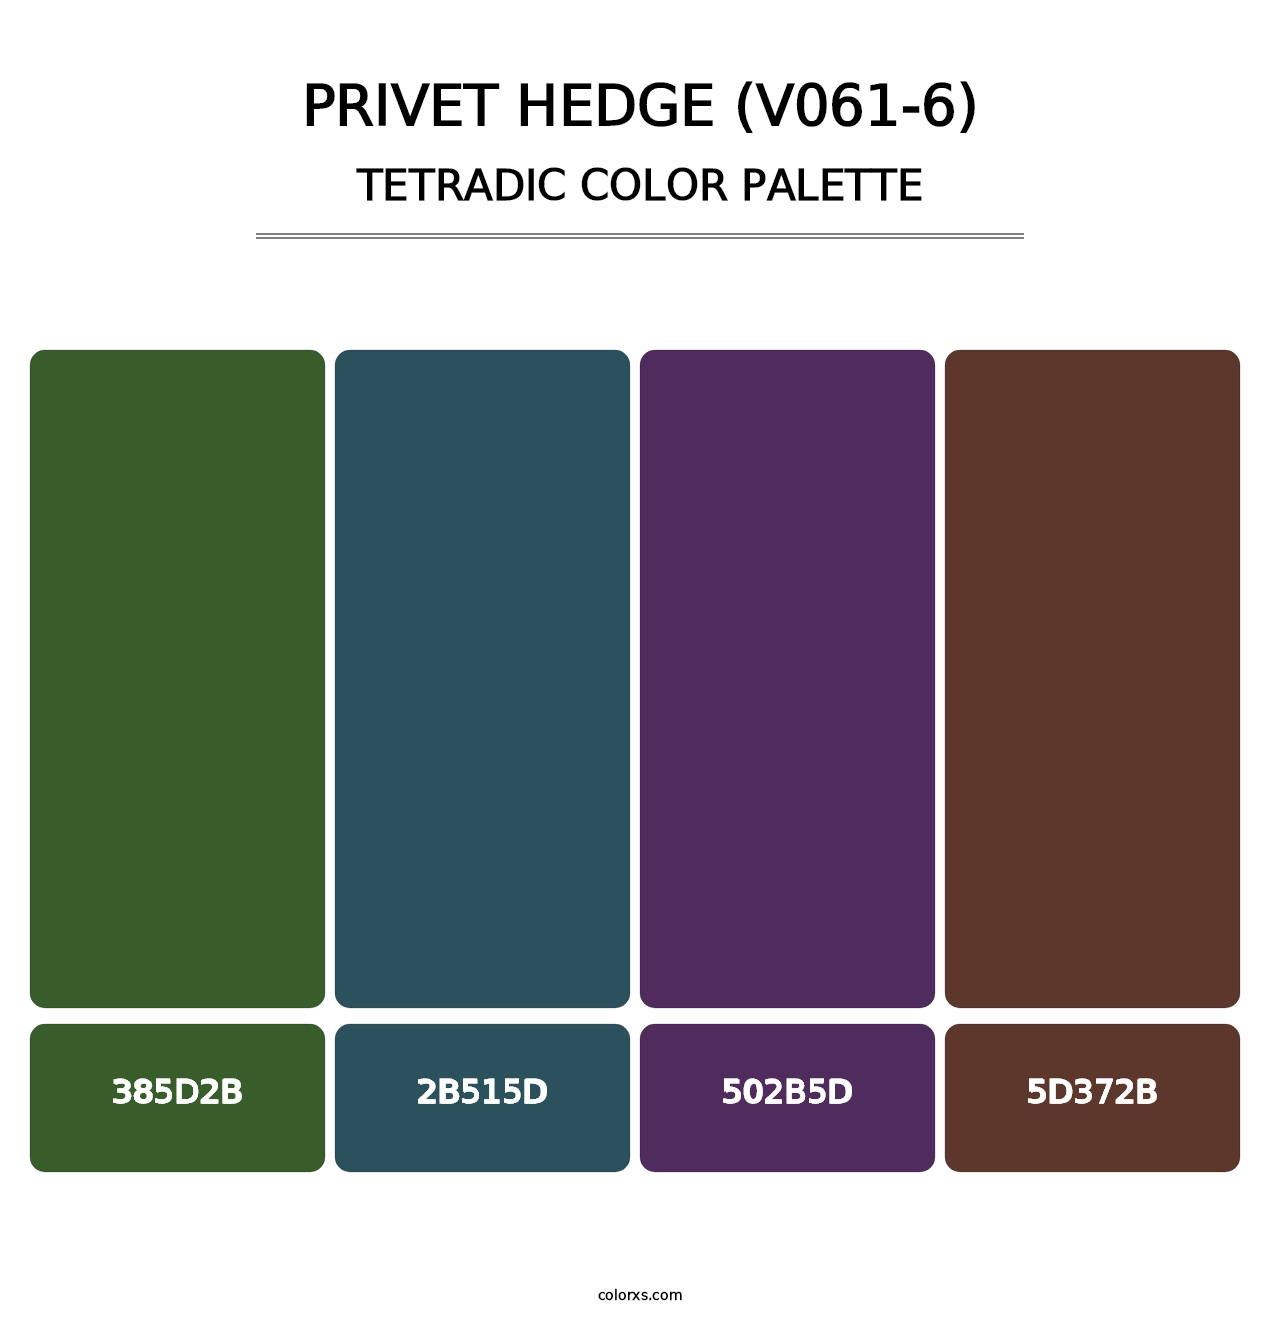 Privet Hedge (V061-6) - Tetradic Color Palette